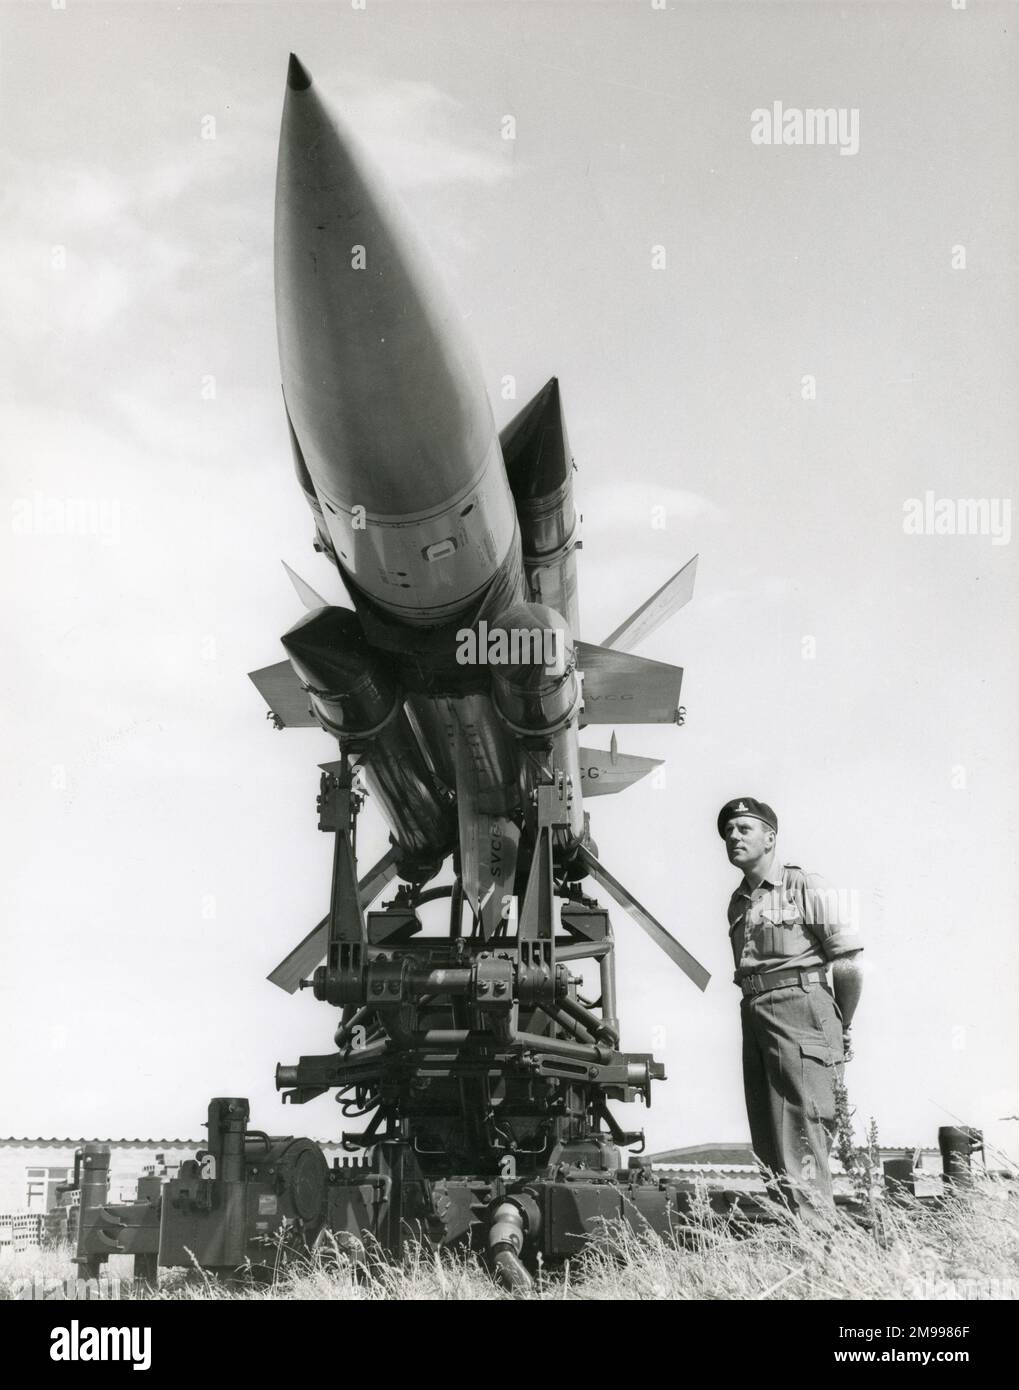 Sgt. Leslie Williams vom 32. Guided Weapons Regiment der Royal Artillery in Ty Croes, Nordwales, während des Trainings mit der englischen elektrischen Thunderbird-Boden-Luft-Rakete, 16. Juli 1961. Stockfoto